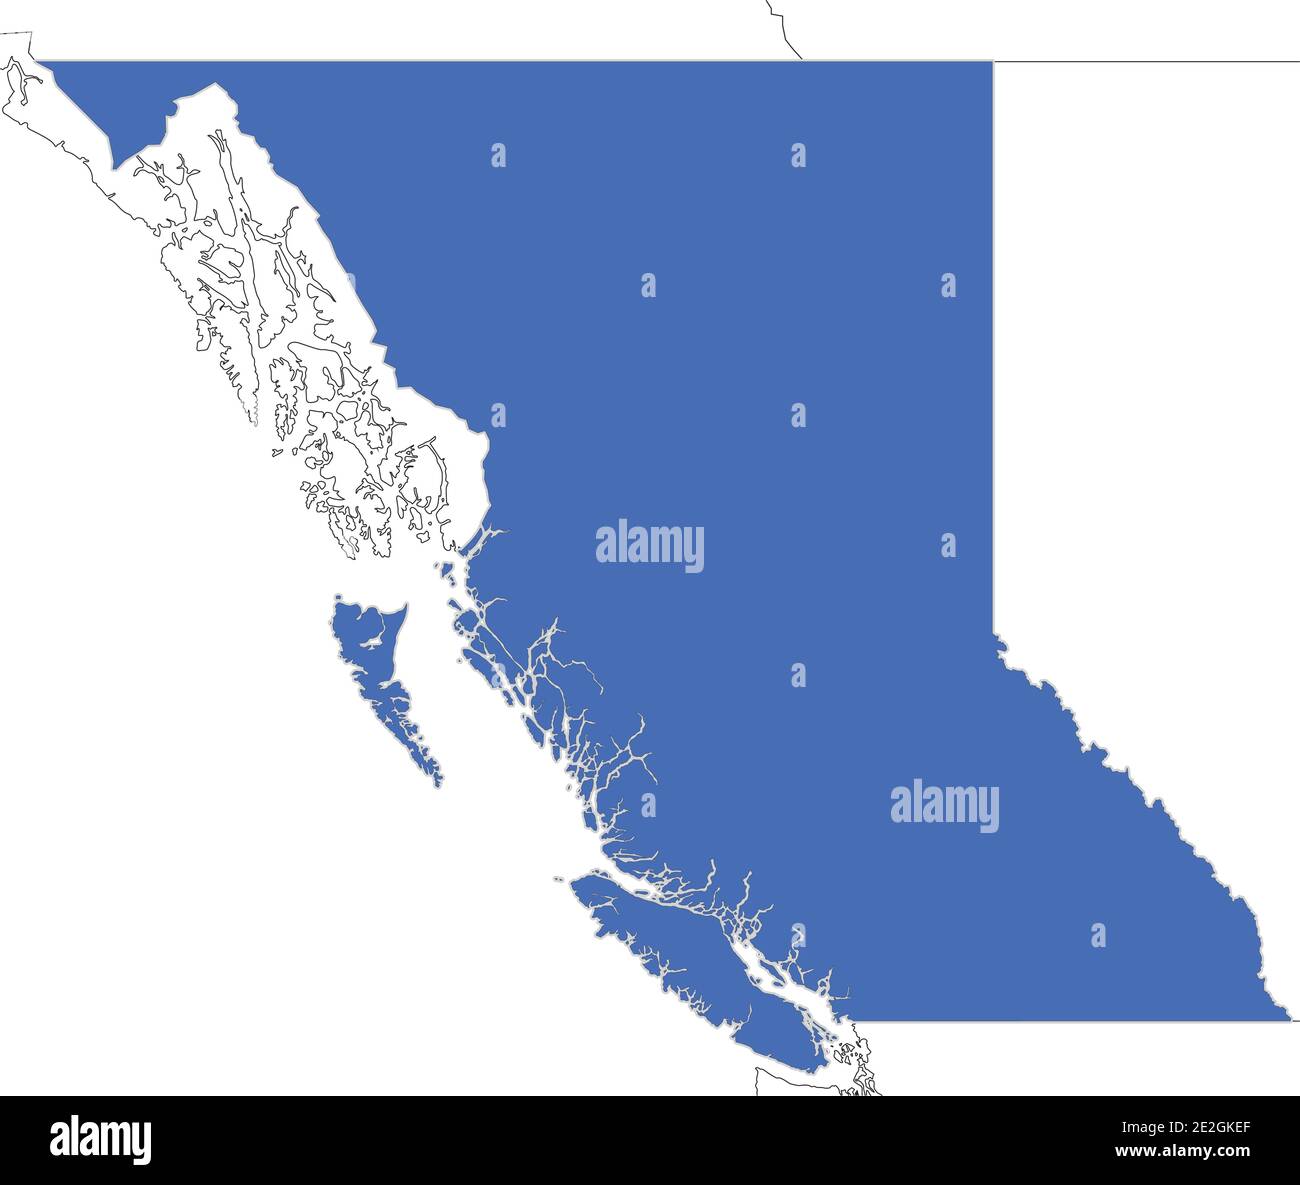 Mapa simple de Columbia Británica, provincia de Canadá con contornos de regiones vecinas como Yukon, Territorios del Noroeste y Alberta. Ilustración del Vector